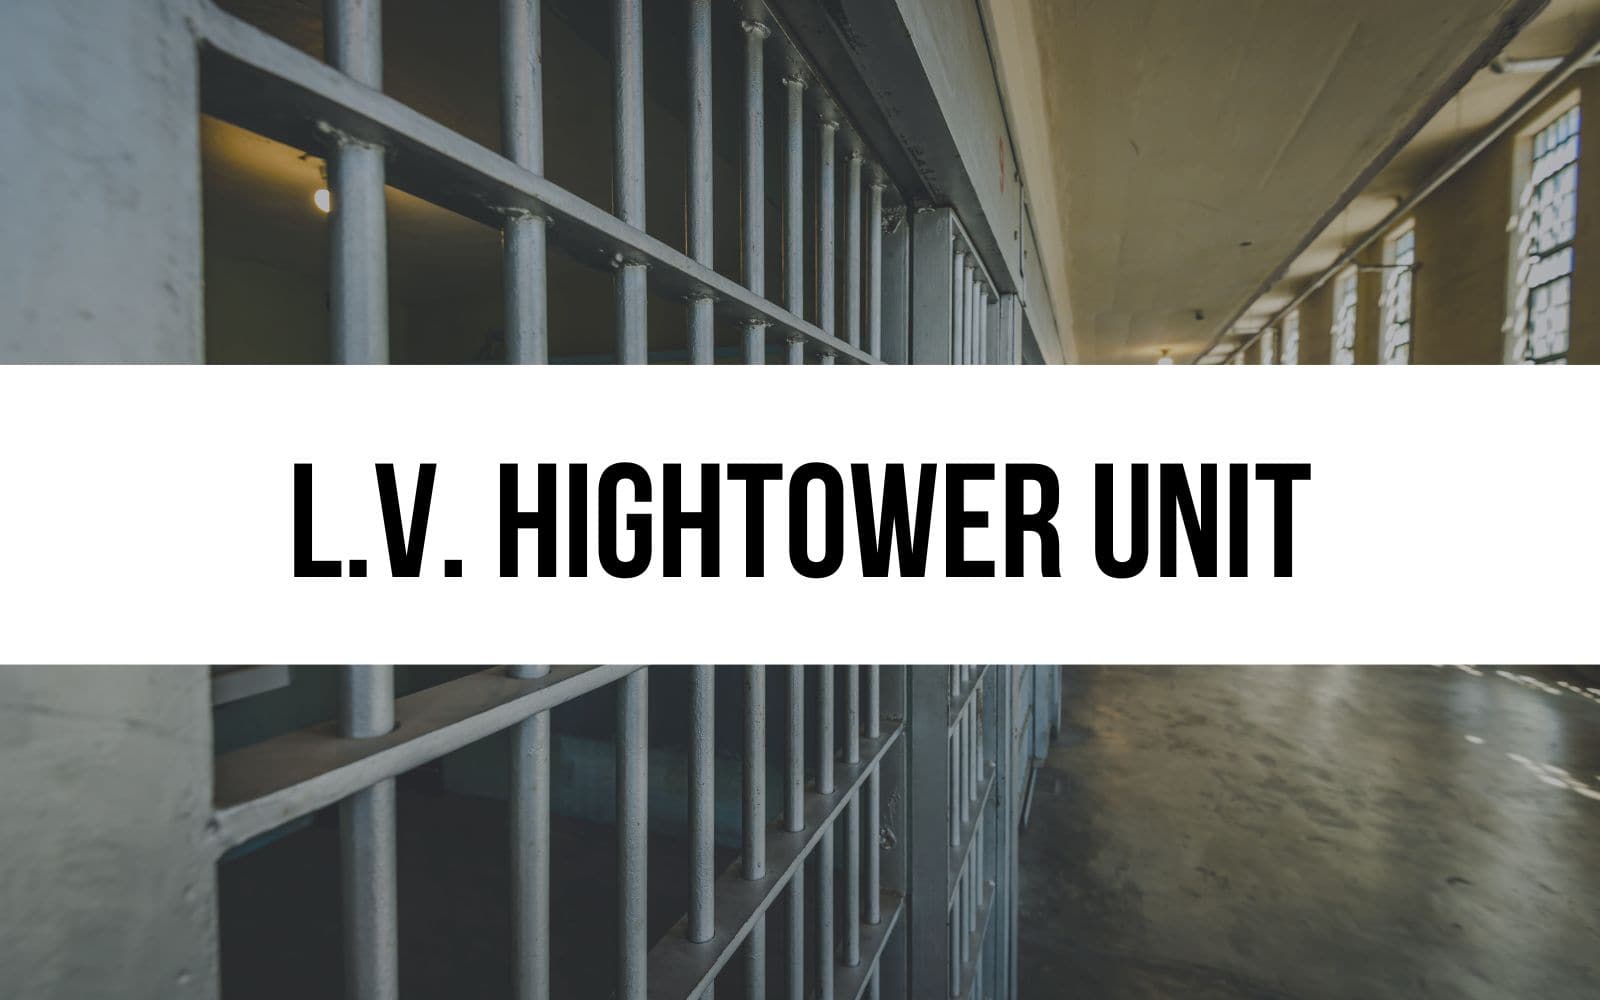 L.V. Hightower Unit